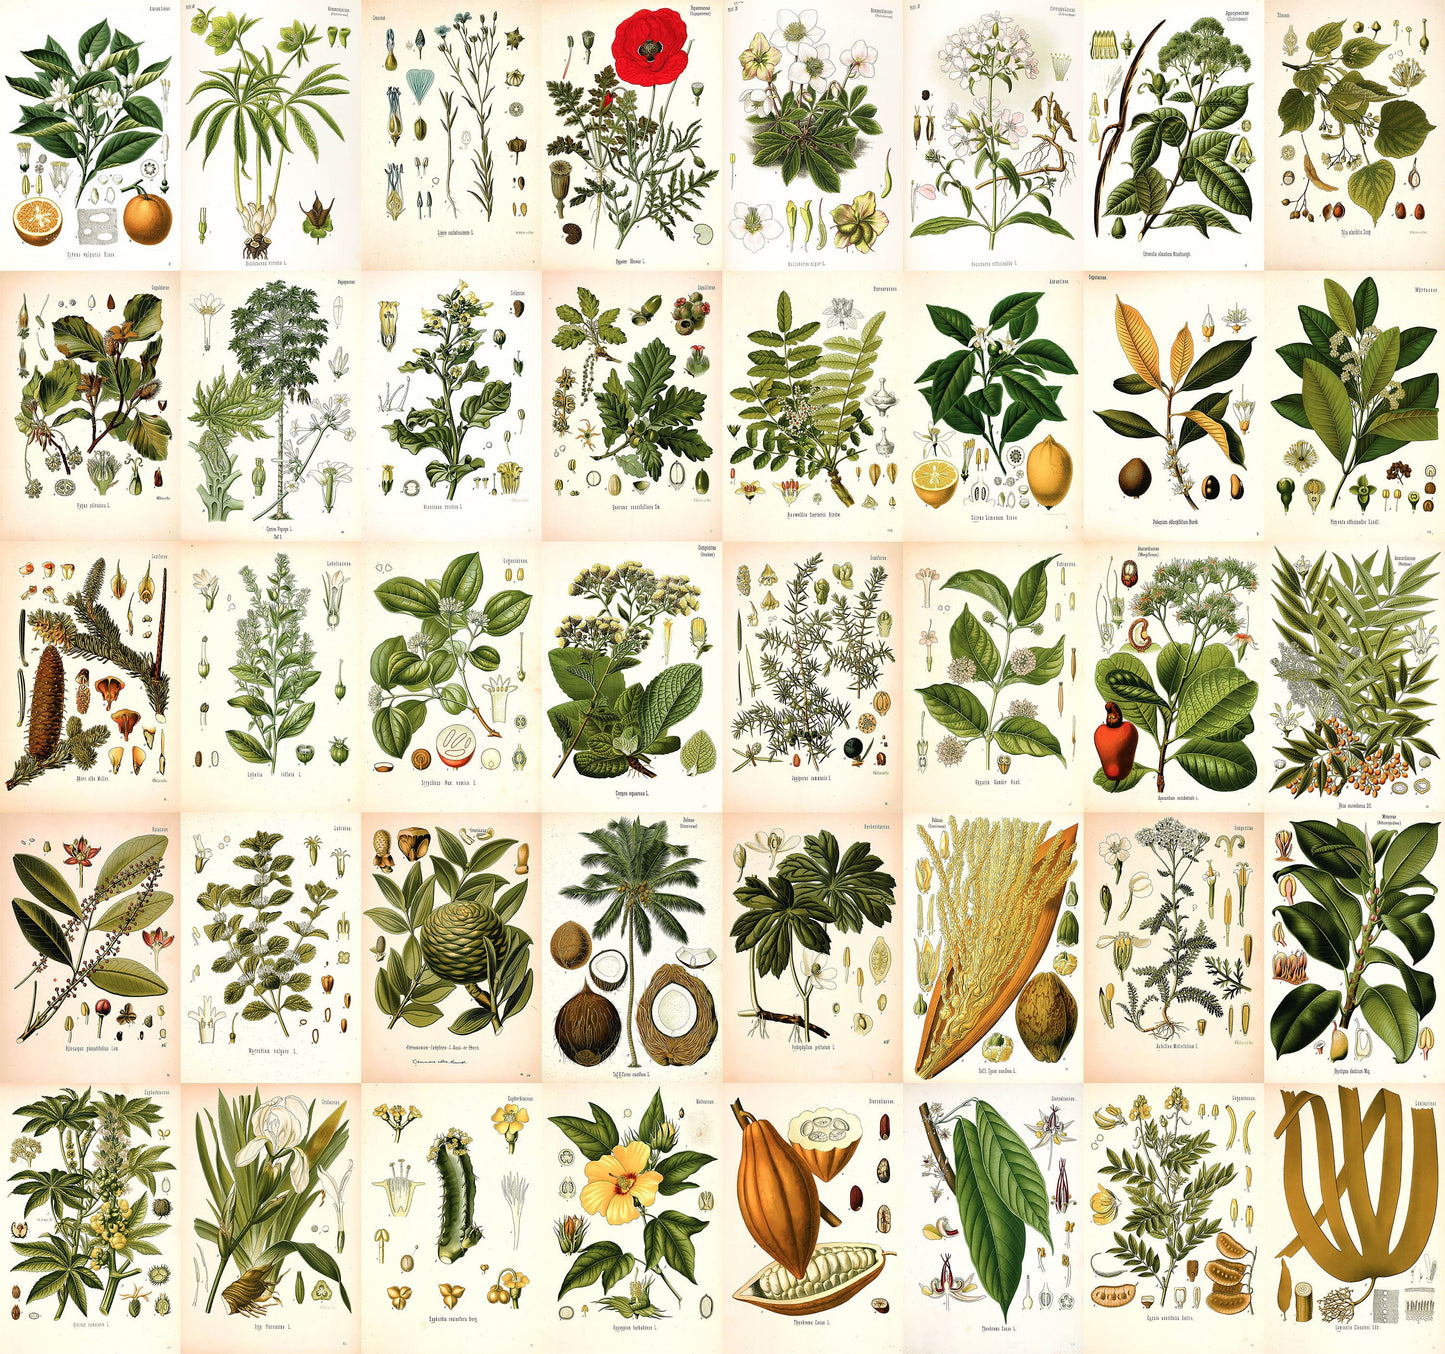 Kohler's Medicinal Plants 4"x6" Collage Kit Set 1 [153 Images]